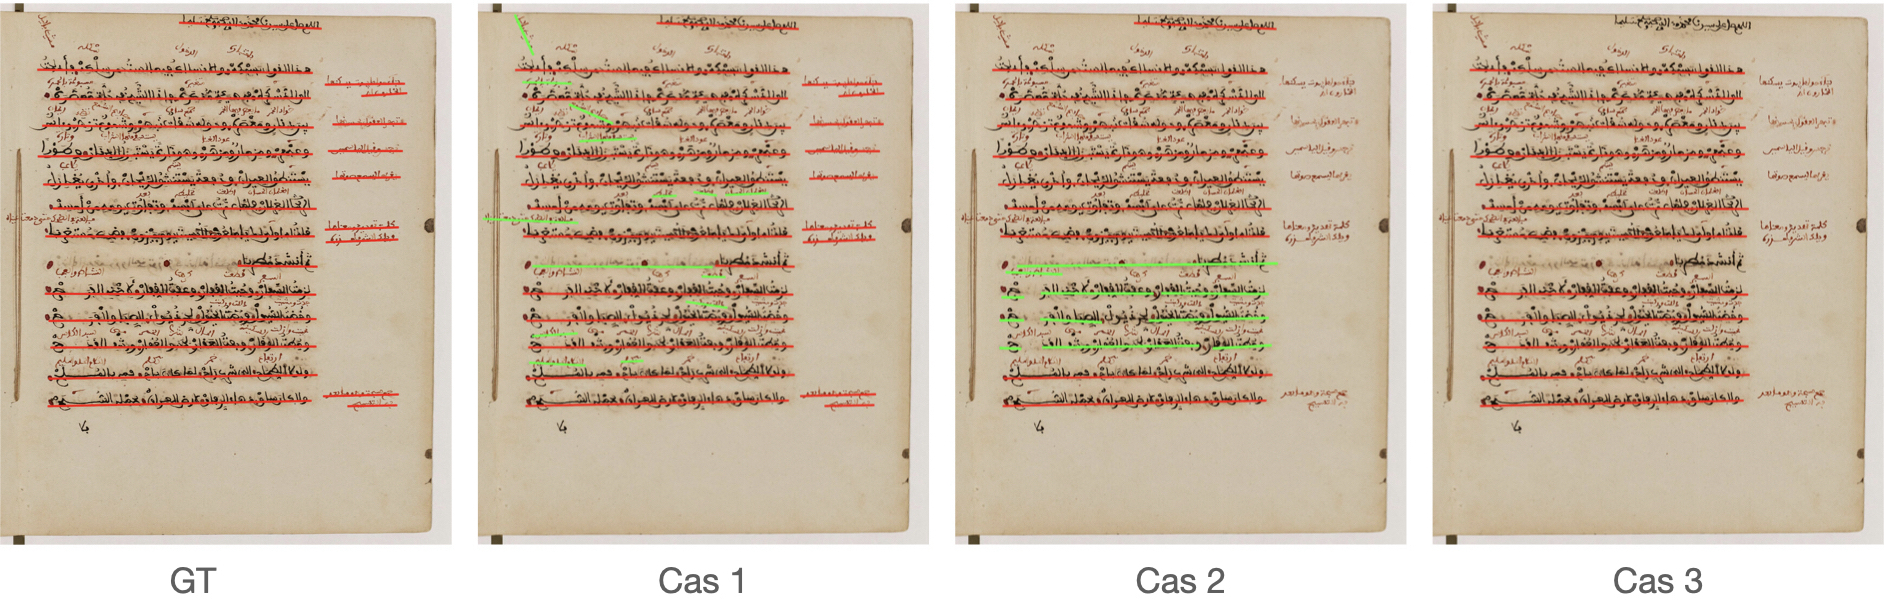 Trois exemples de détection de lignes dans un manuscrit